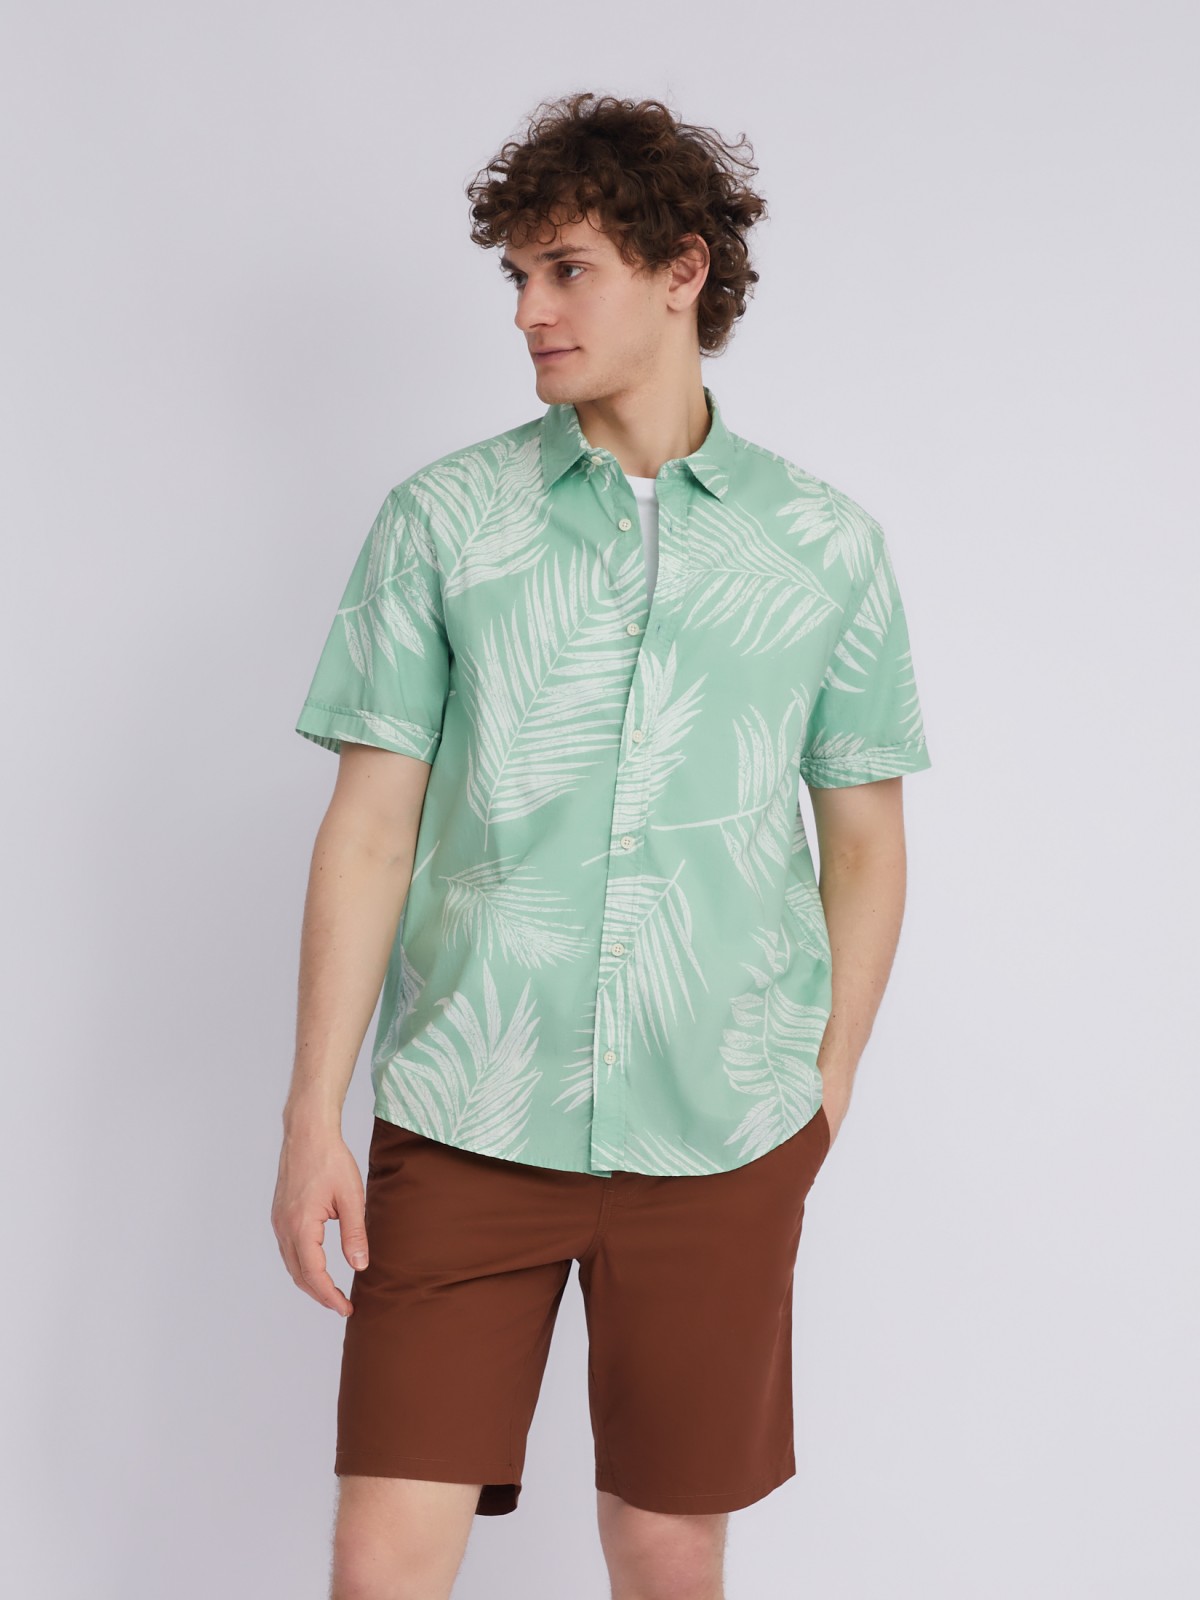 Рубашка из хлопка с принтом zolla 21325224R051, цвет зеленый, размер S - фото 6